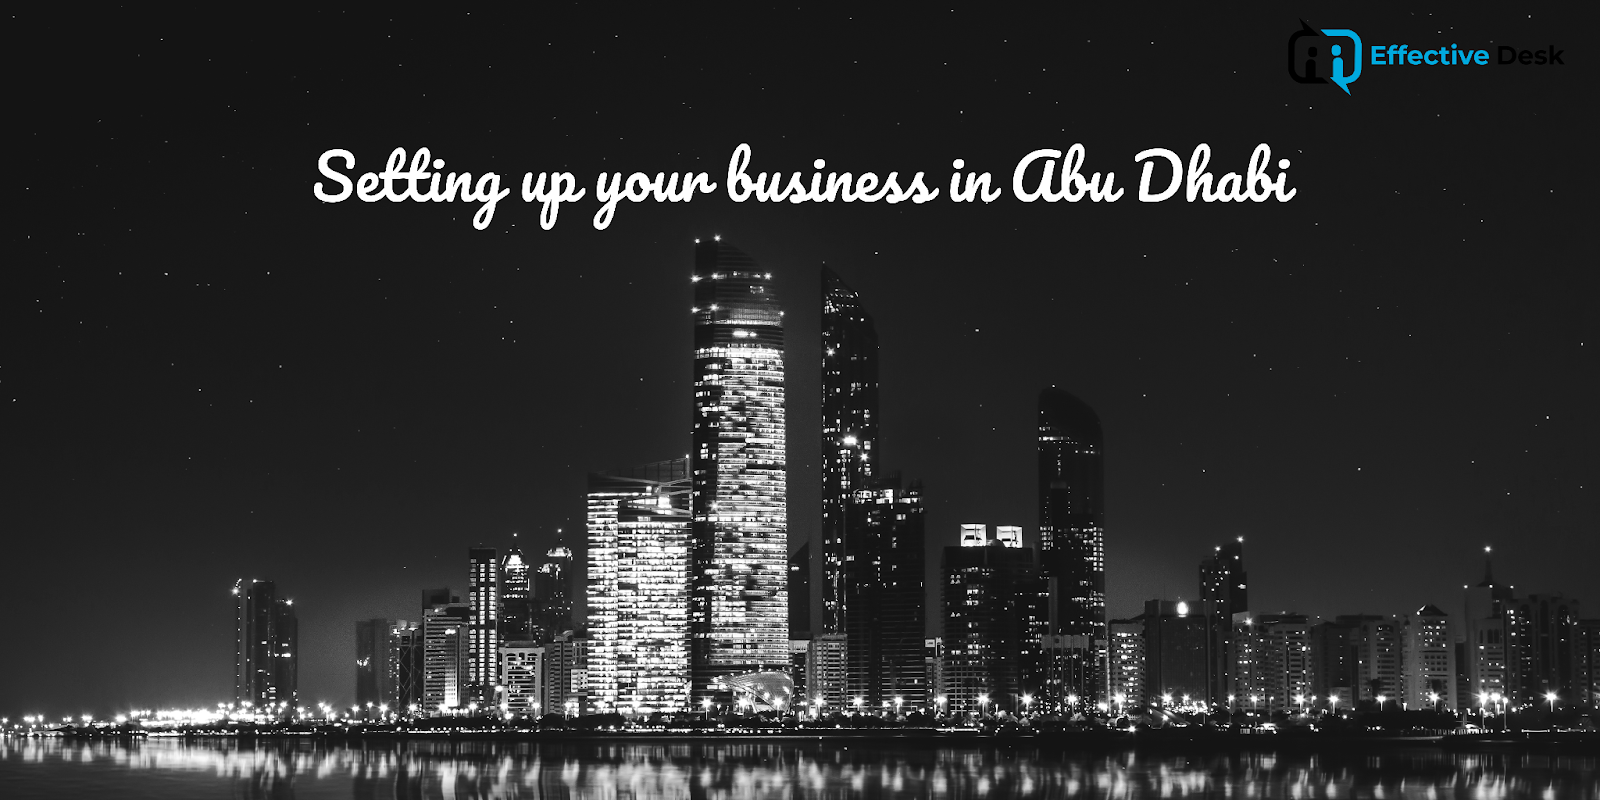 Abu Dhabi business setup.
